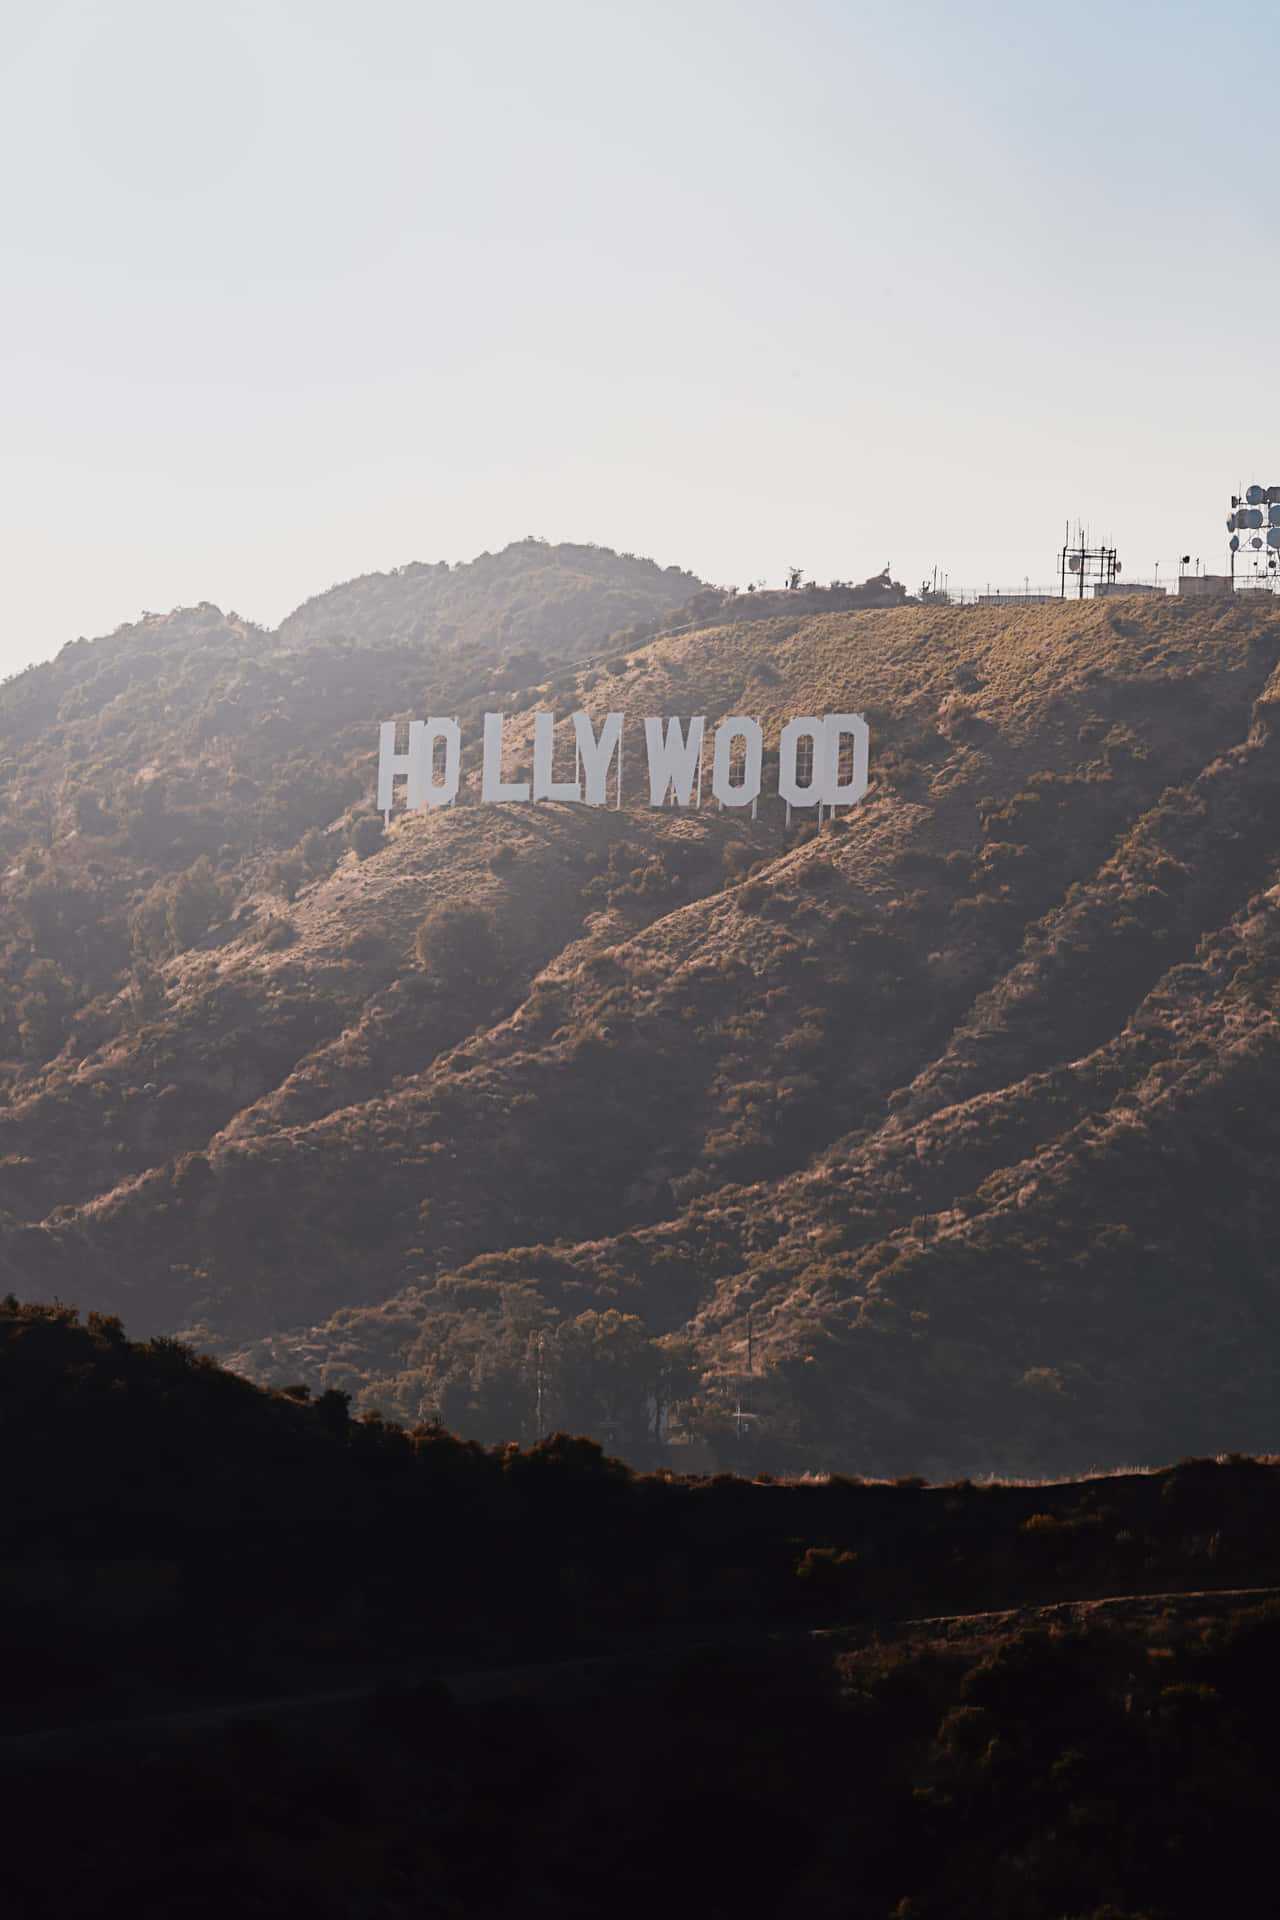 Vistafrontale Del Cartello Segnaletico Di Hollywood